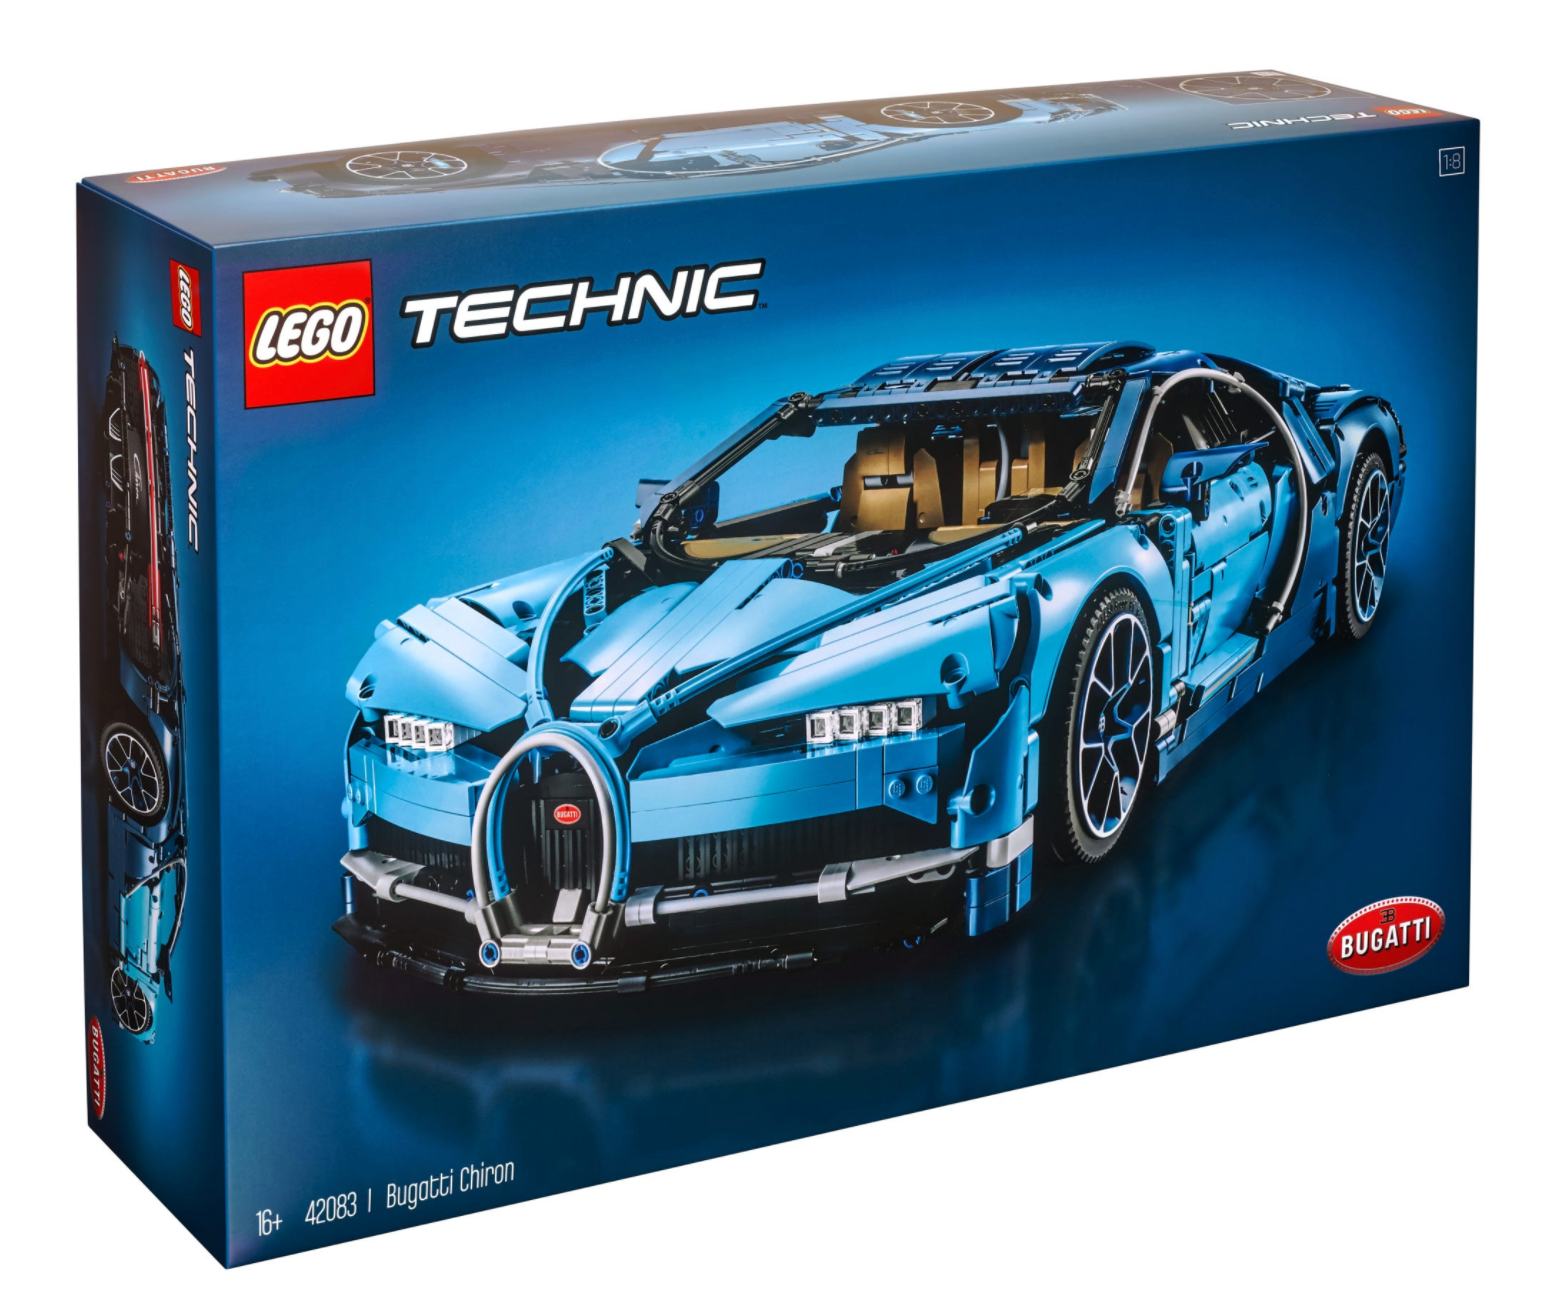 LEGO: Technic - Bugatti Chiron